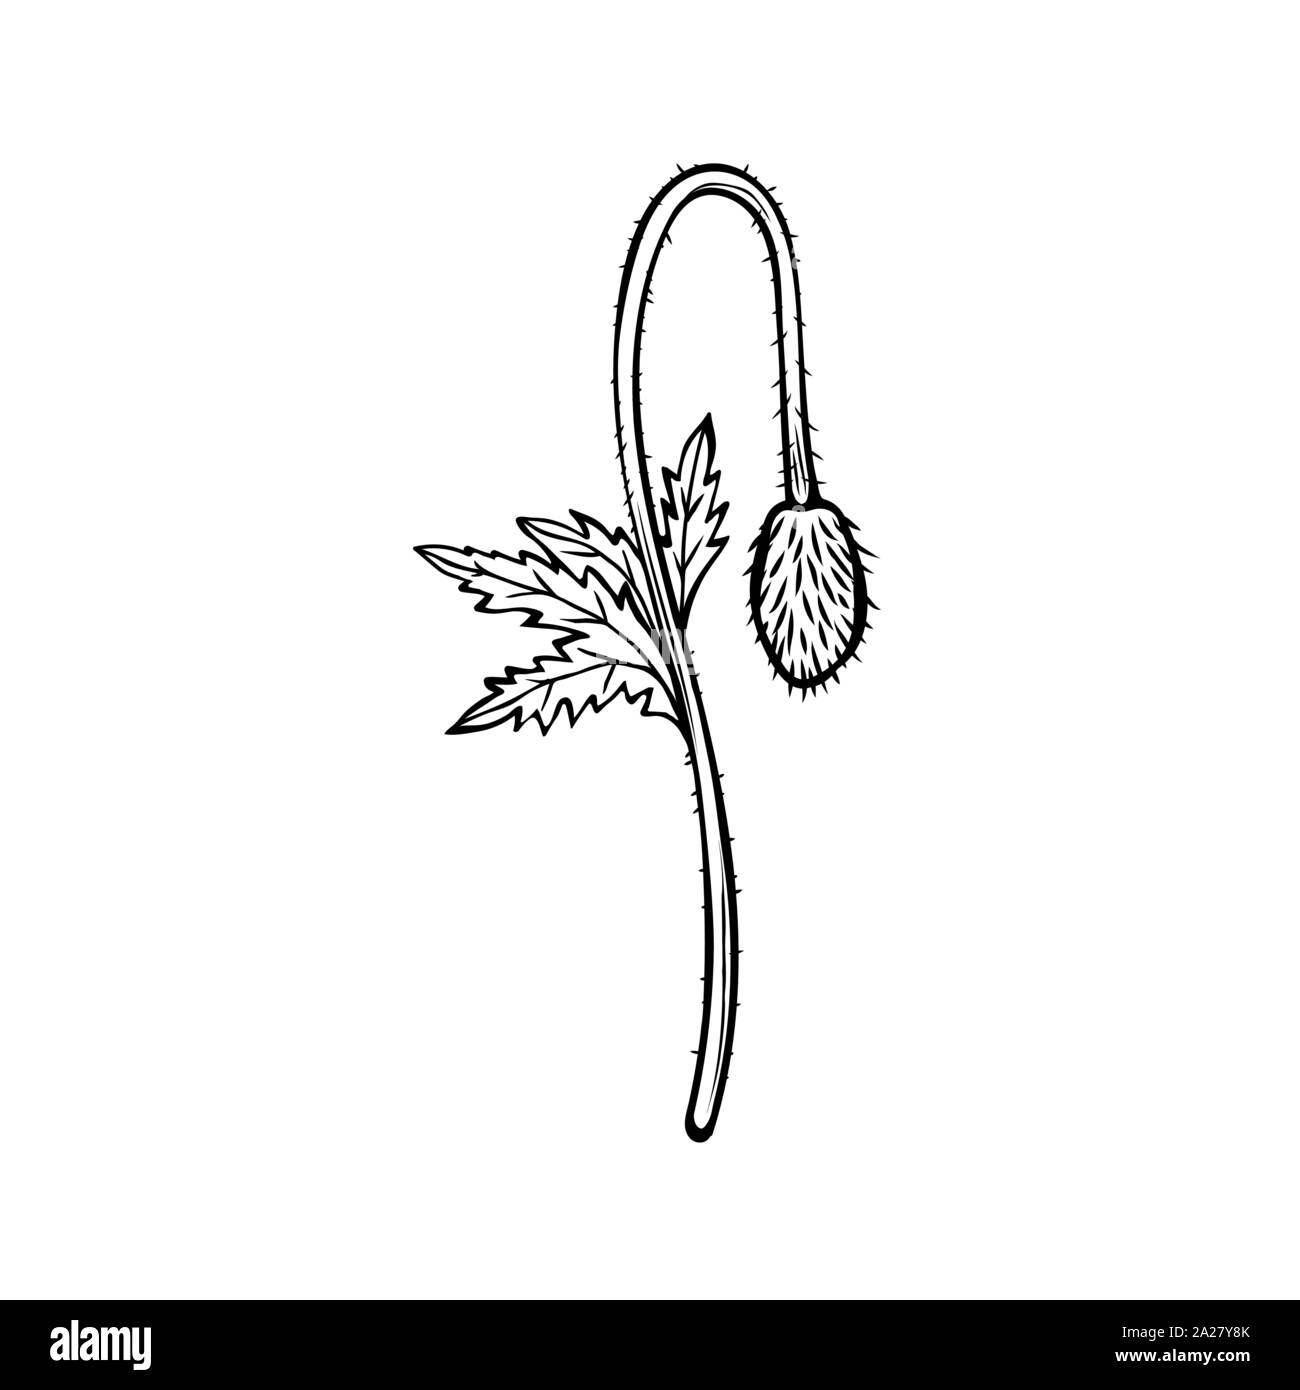 Fleur de pavot hand drawn vector illustration. La floraison des plantes d'été miel noir et blanc. Gravure florale monochrome avec la calligraphie. Symbole du jour du Souvenir. Carte postale, élément de design de l'affiche Illustration de Vecteur